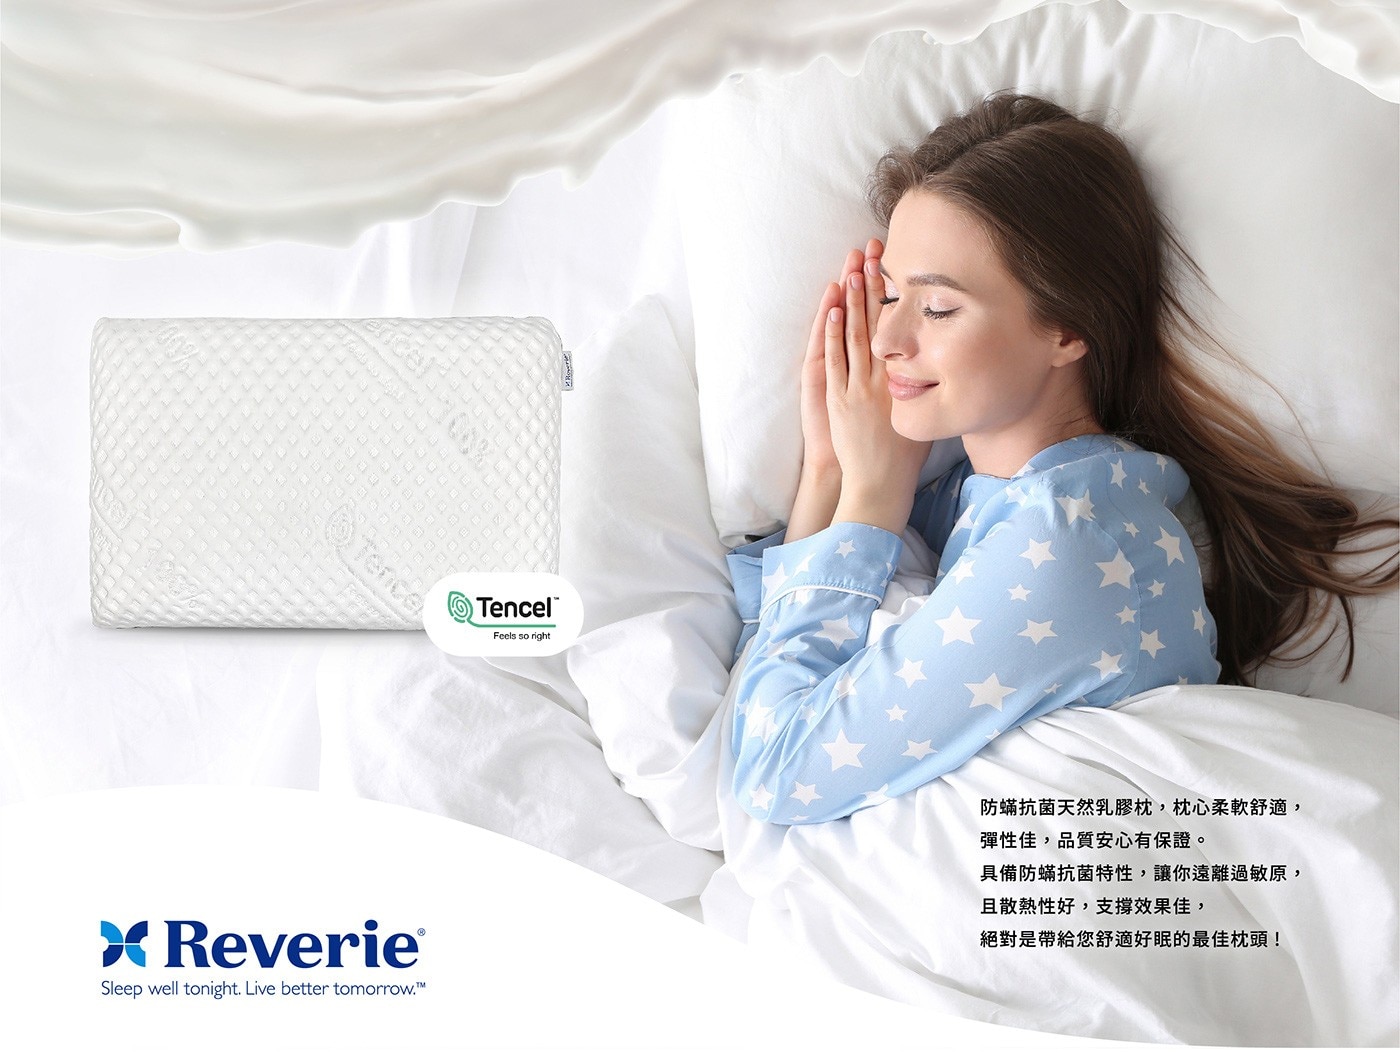 幻知曲釋壓天然乳膠枕環保透氣，舒適支撐熟睡時放鬆後帶來的壓力，平面型枕正躺或側睡能獲得安穩支撐。